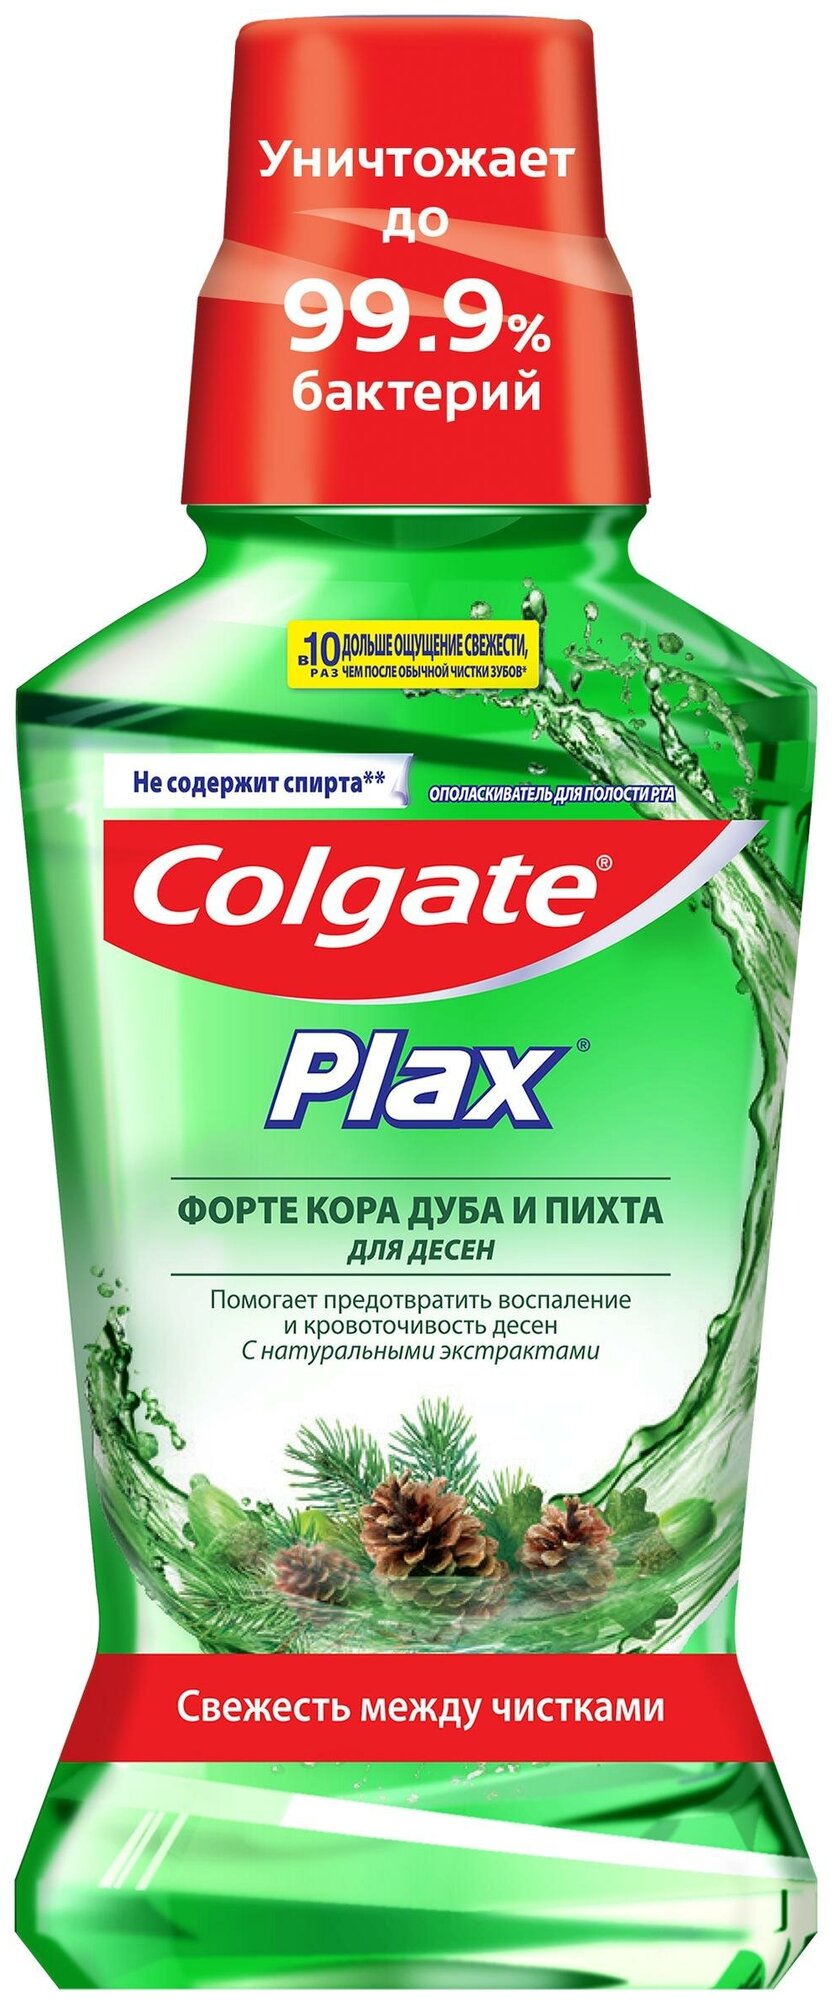 Colgate Plax Ополаскиватель для полости рта, Кора дуба и Пихта, 250мл